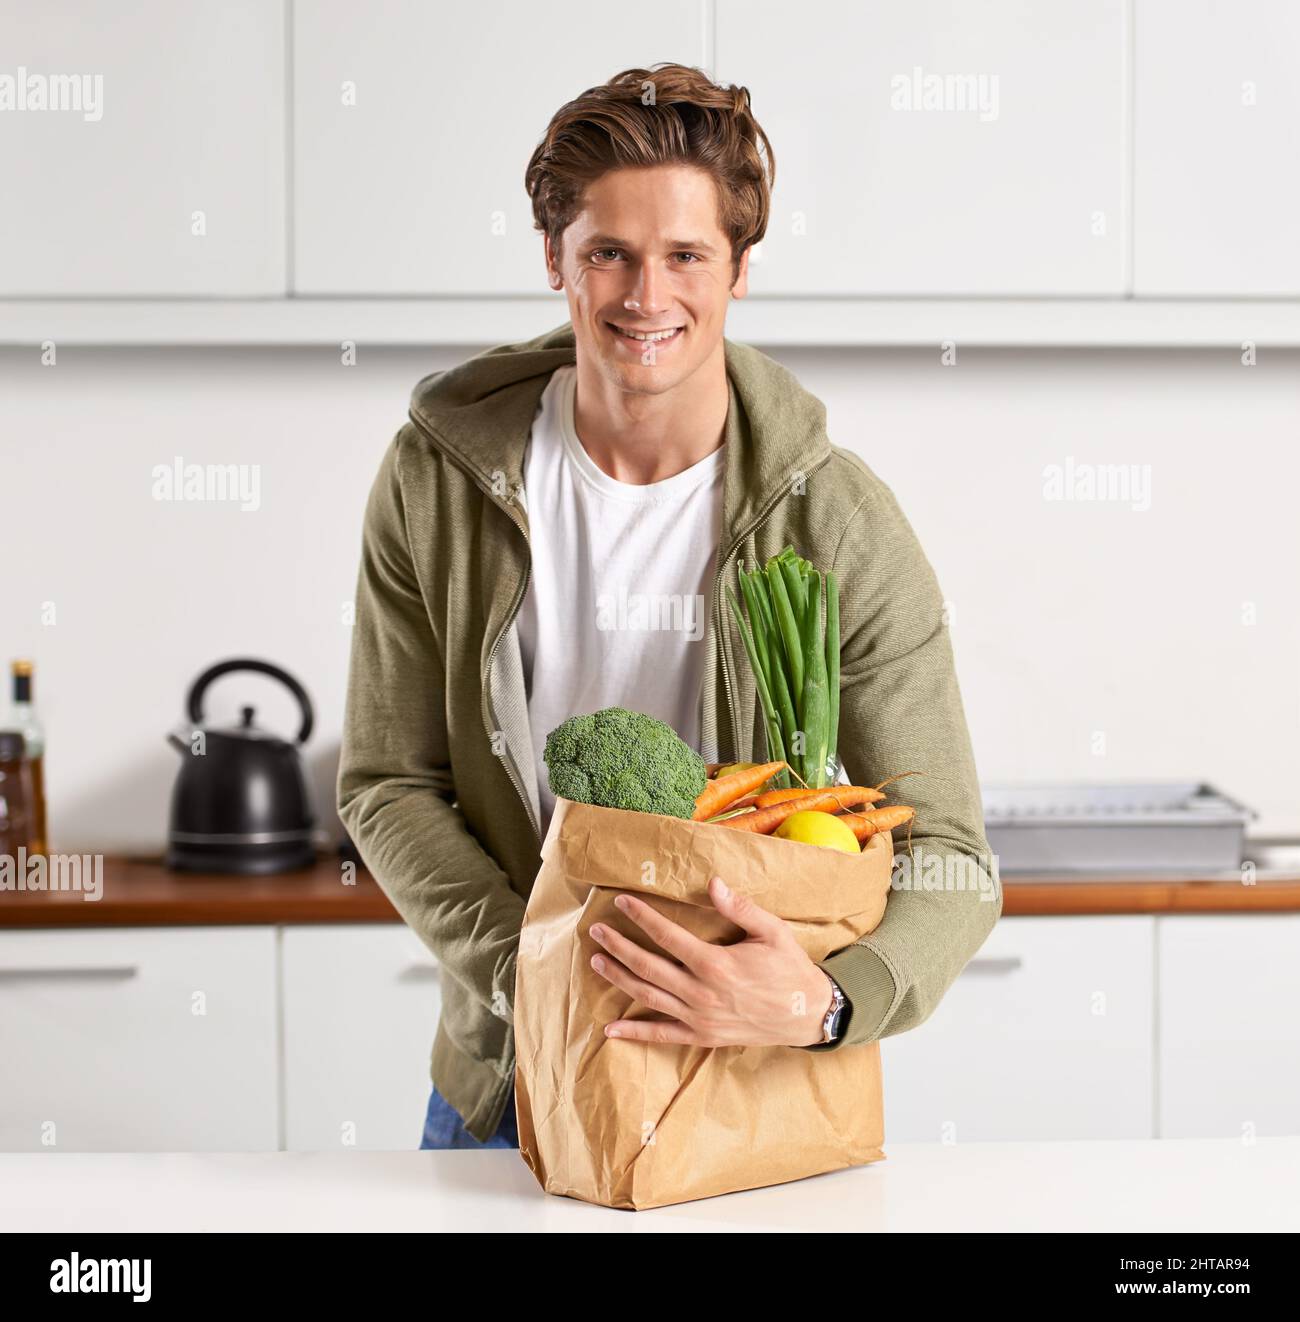 Ich bin stolz darauf, was in meinen Körper geht. Ein junger Mann in einer Küche, der einen braunen Papierbeutel mit Gemüse hält. Stockfoto